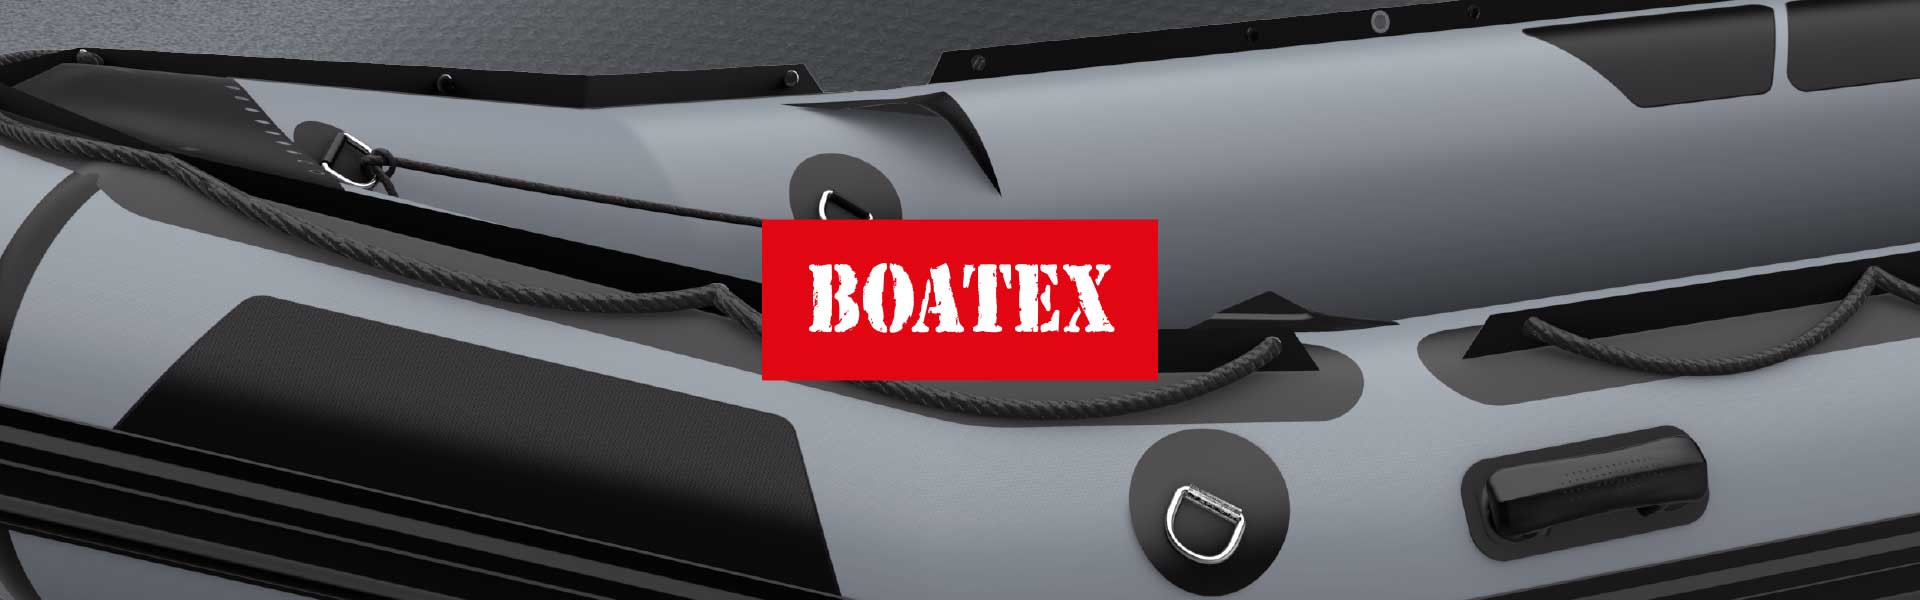 BOATEX 800 г/м.кв темно-сірого кольору – 4,93 $ за м.кв